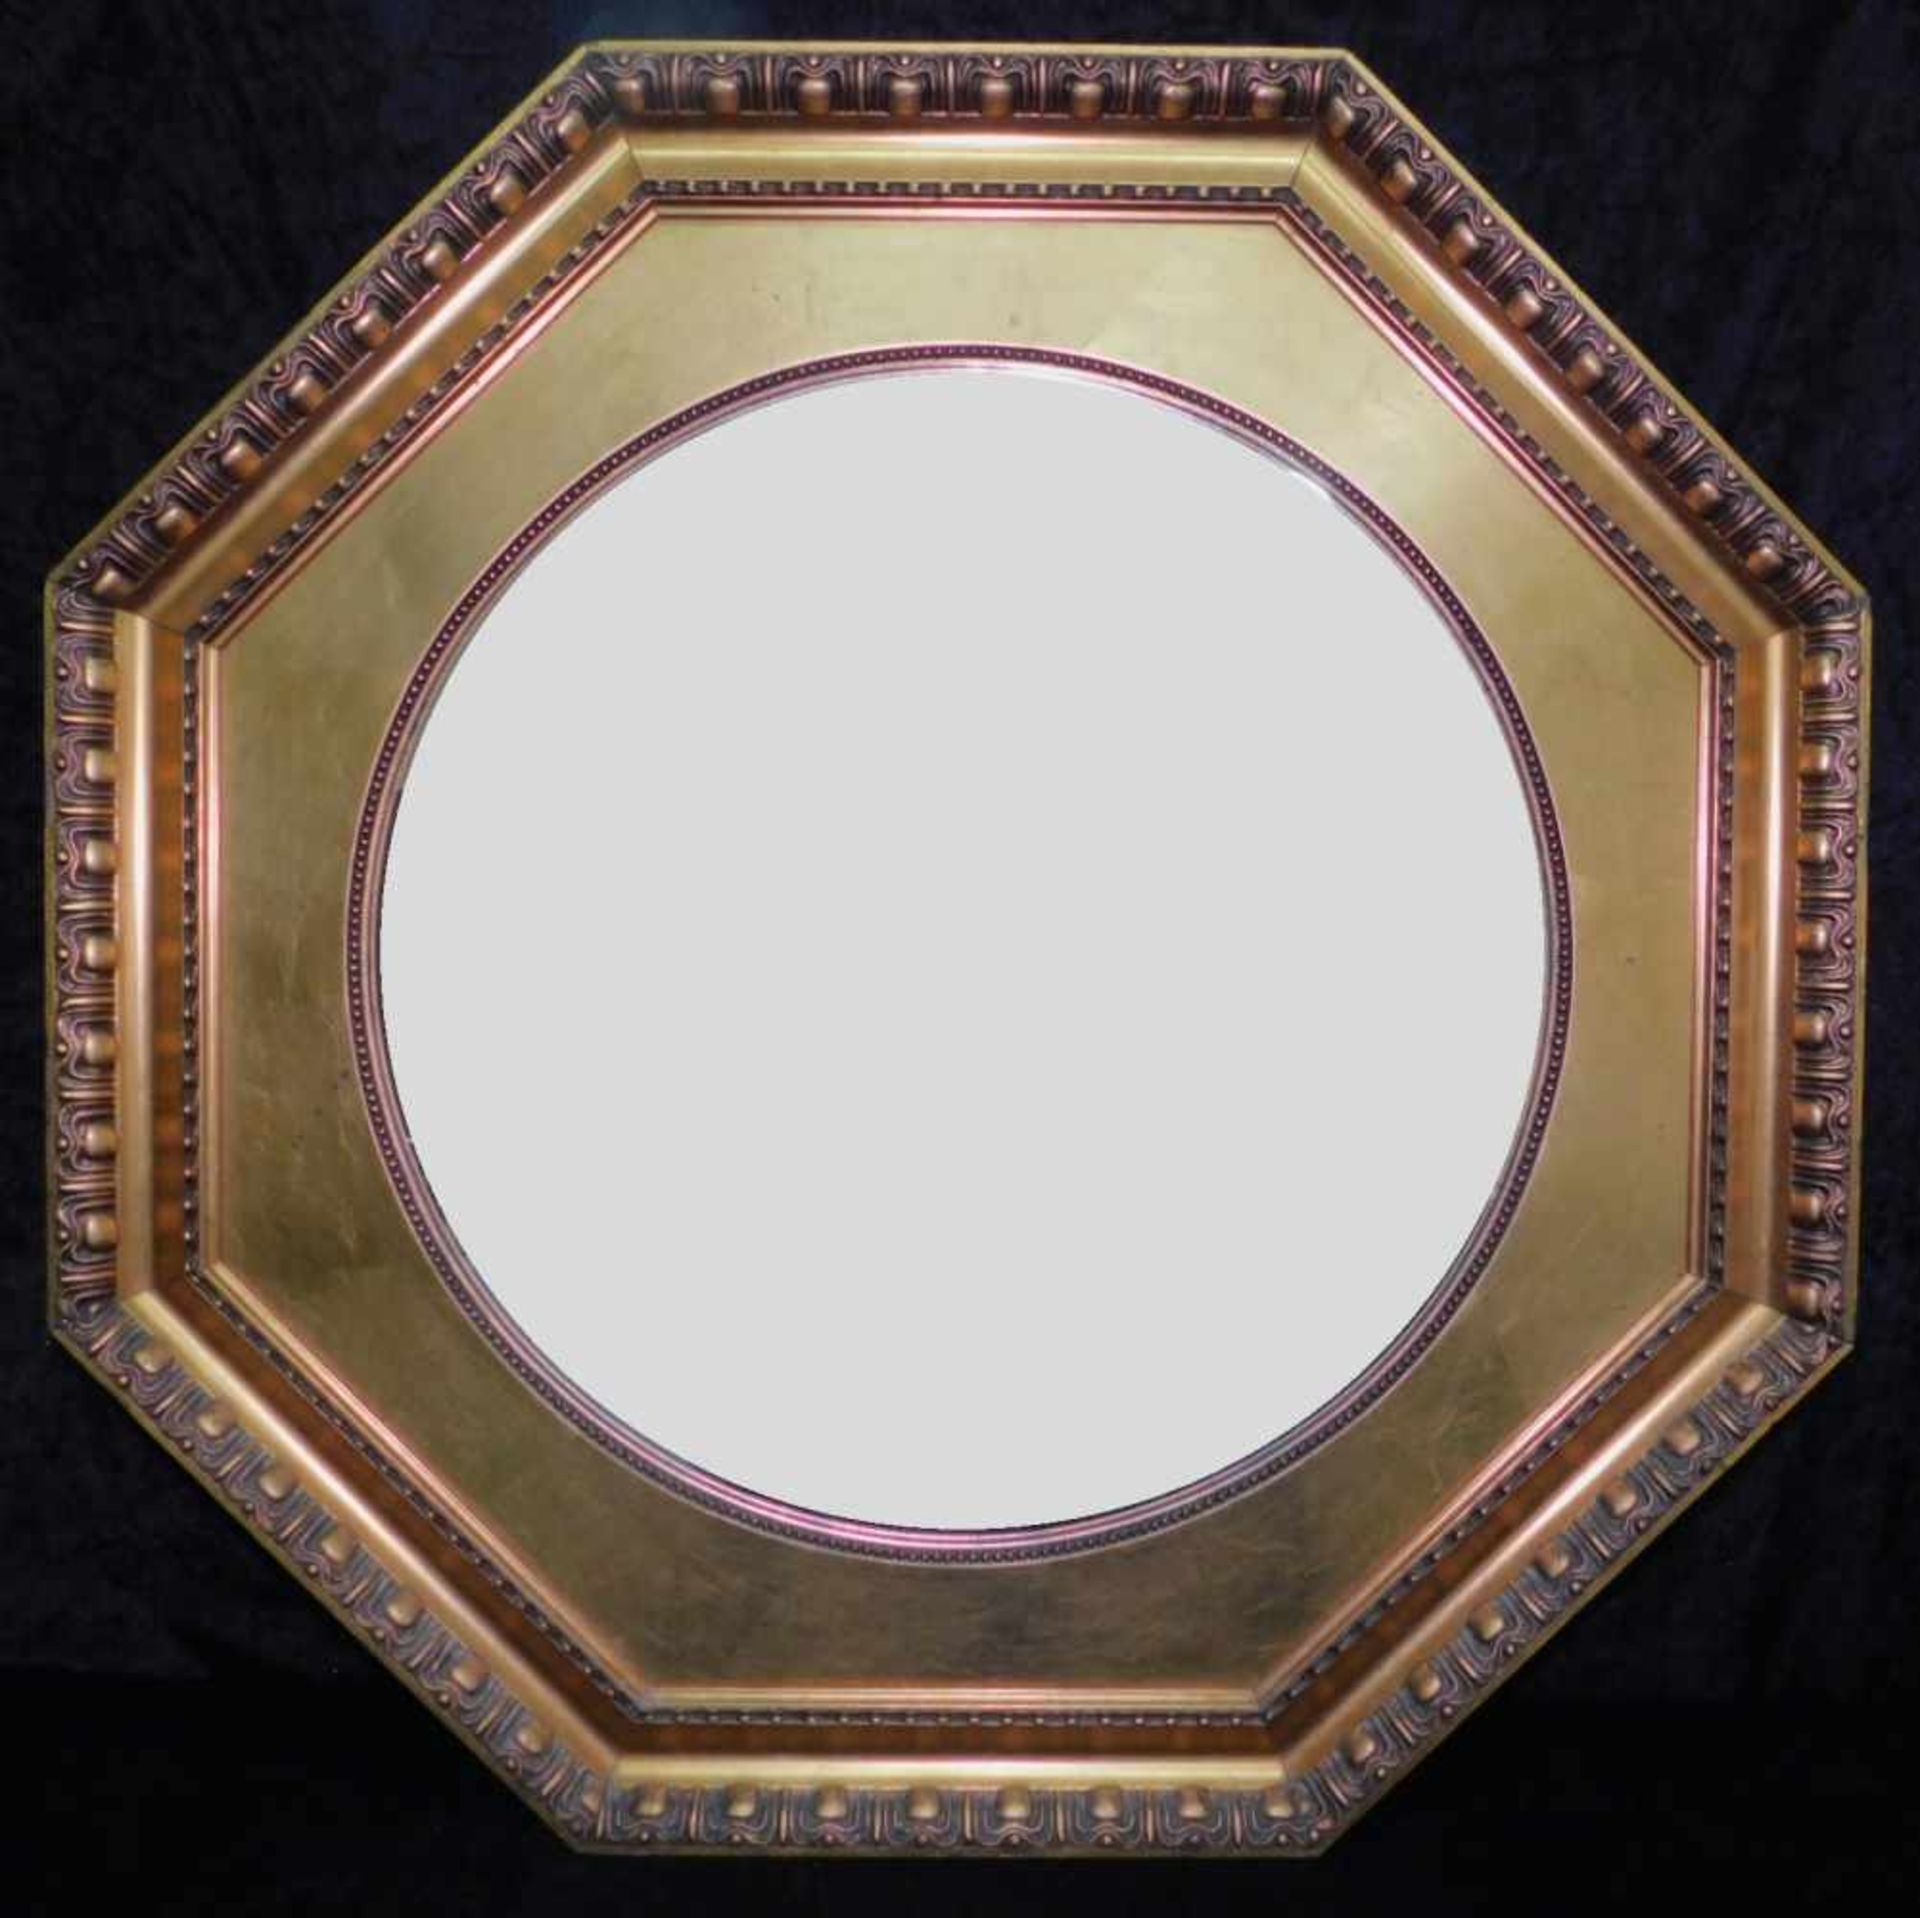 Spiegel, Stuckrahmen goldfarben, 8-eckig, Jugendstil um 1900, Höhe 72,5 cm und Breite 72,5 cm, Tiefe